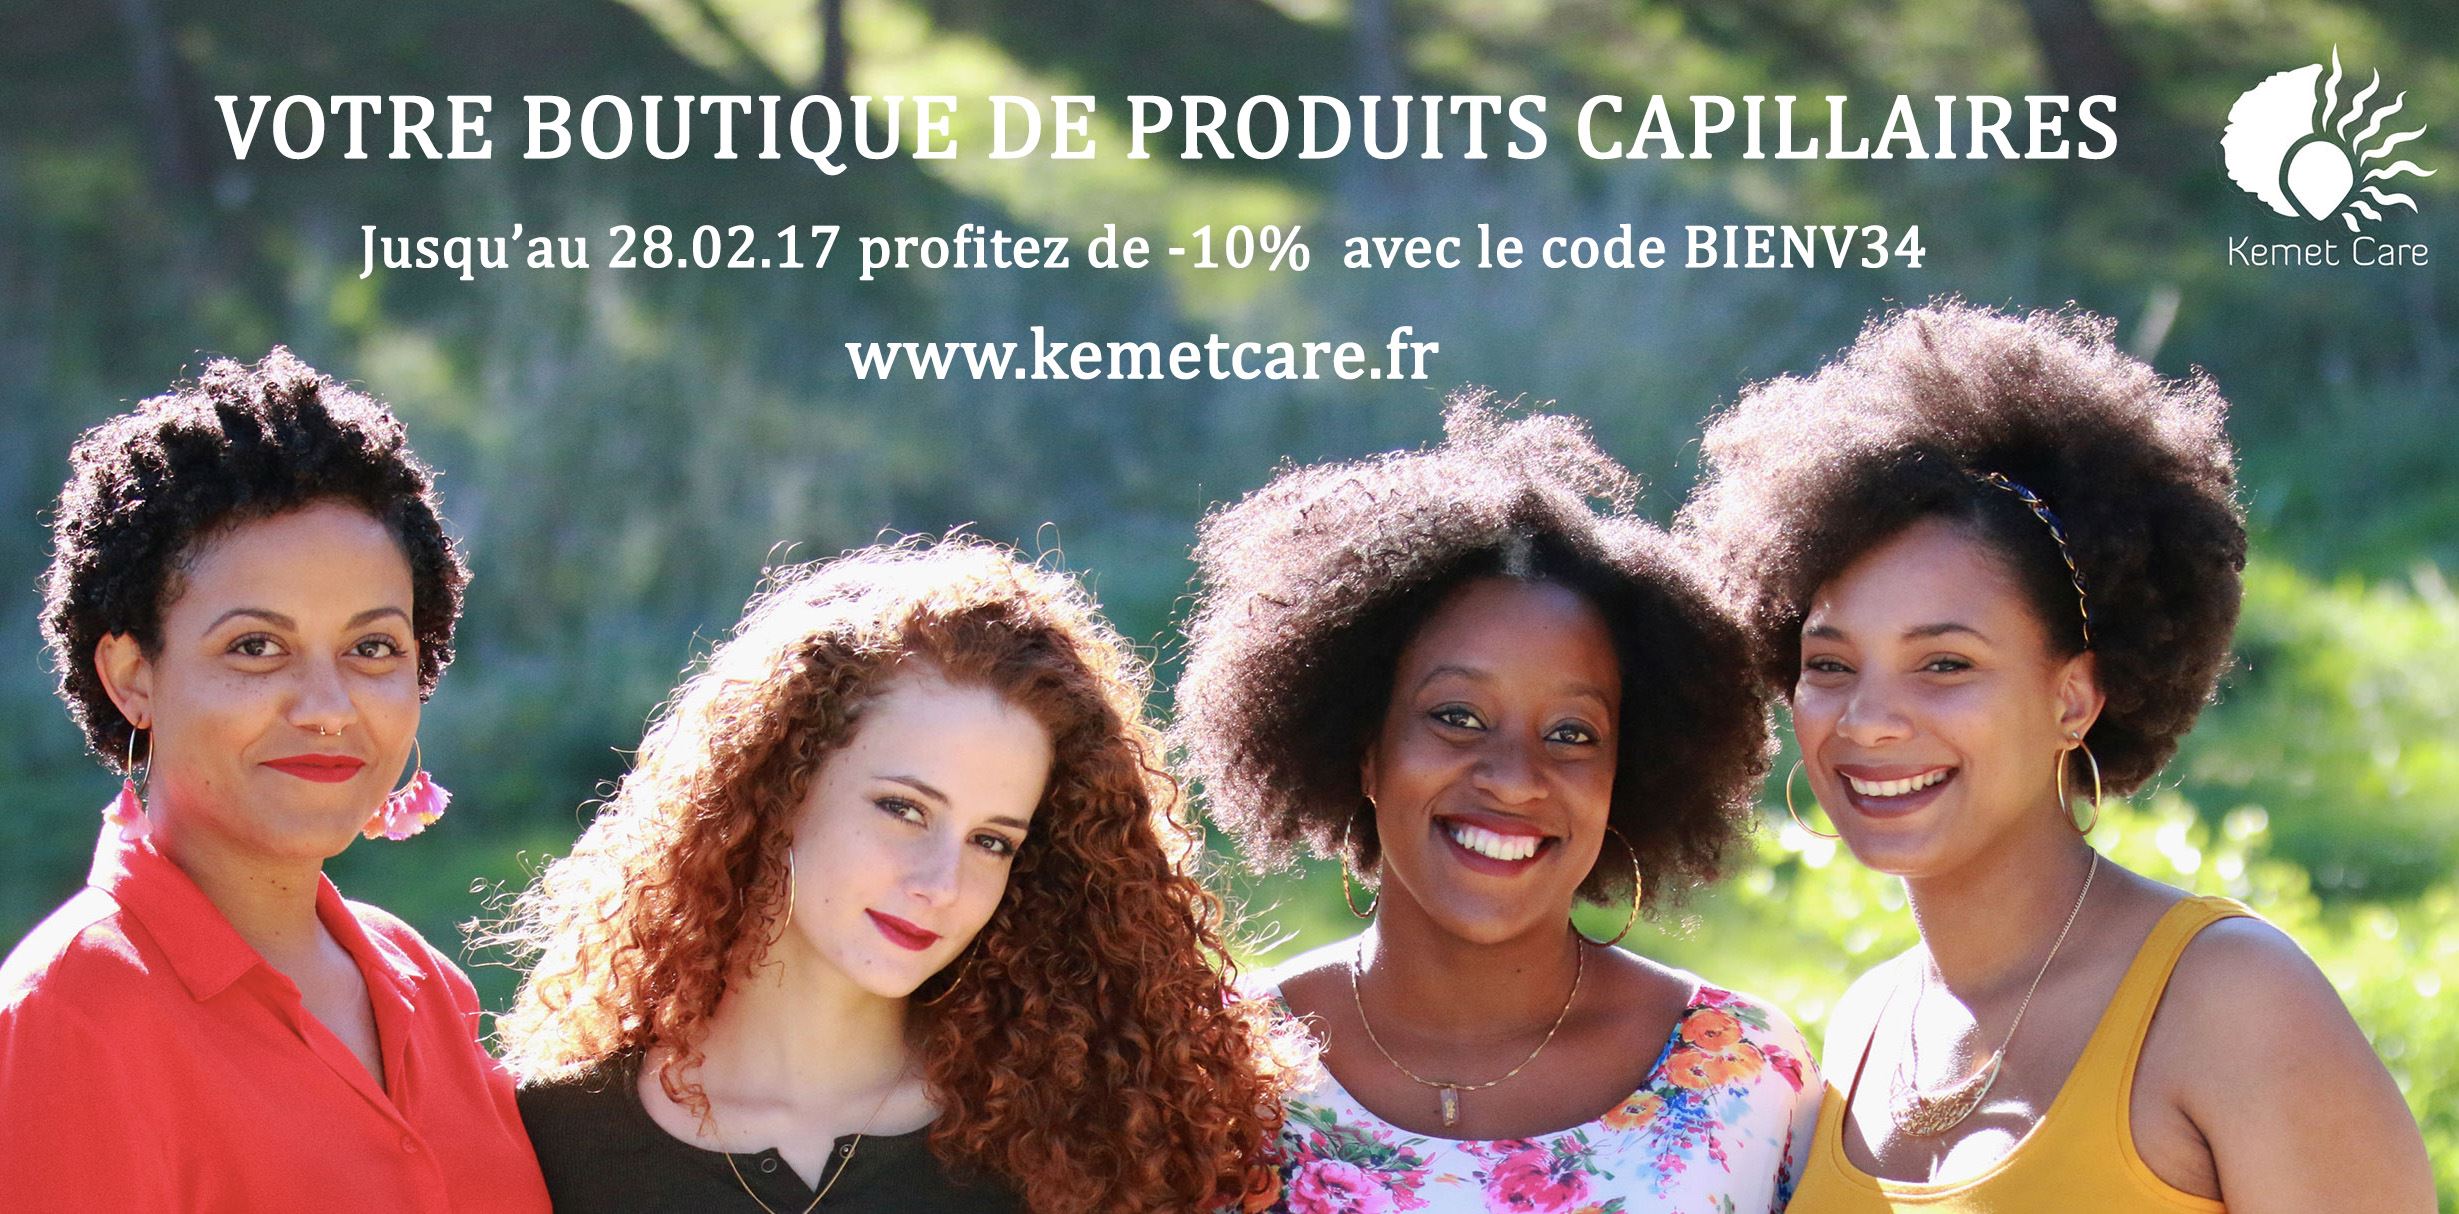 Kemet Care nouvelle boutique ethnique à Montpellier.